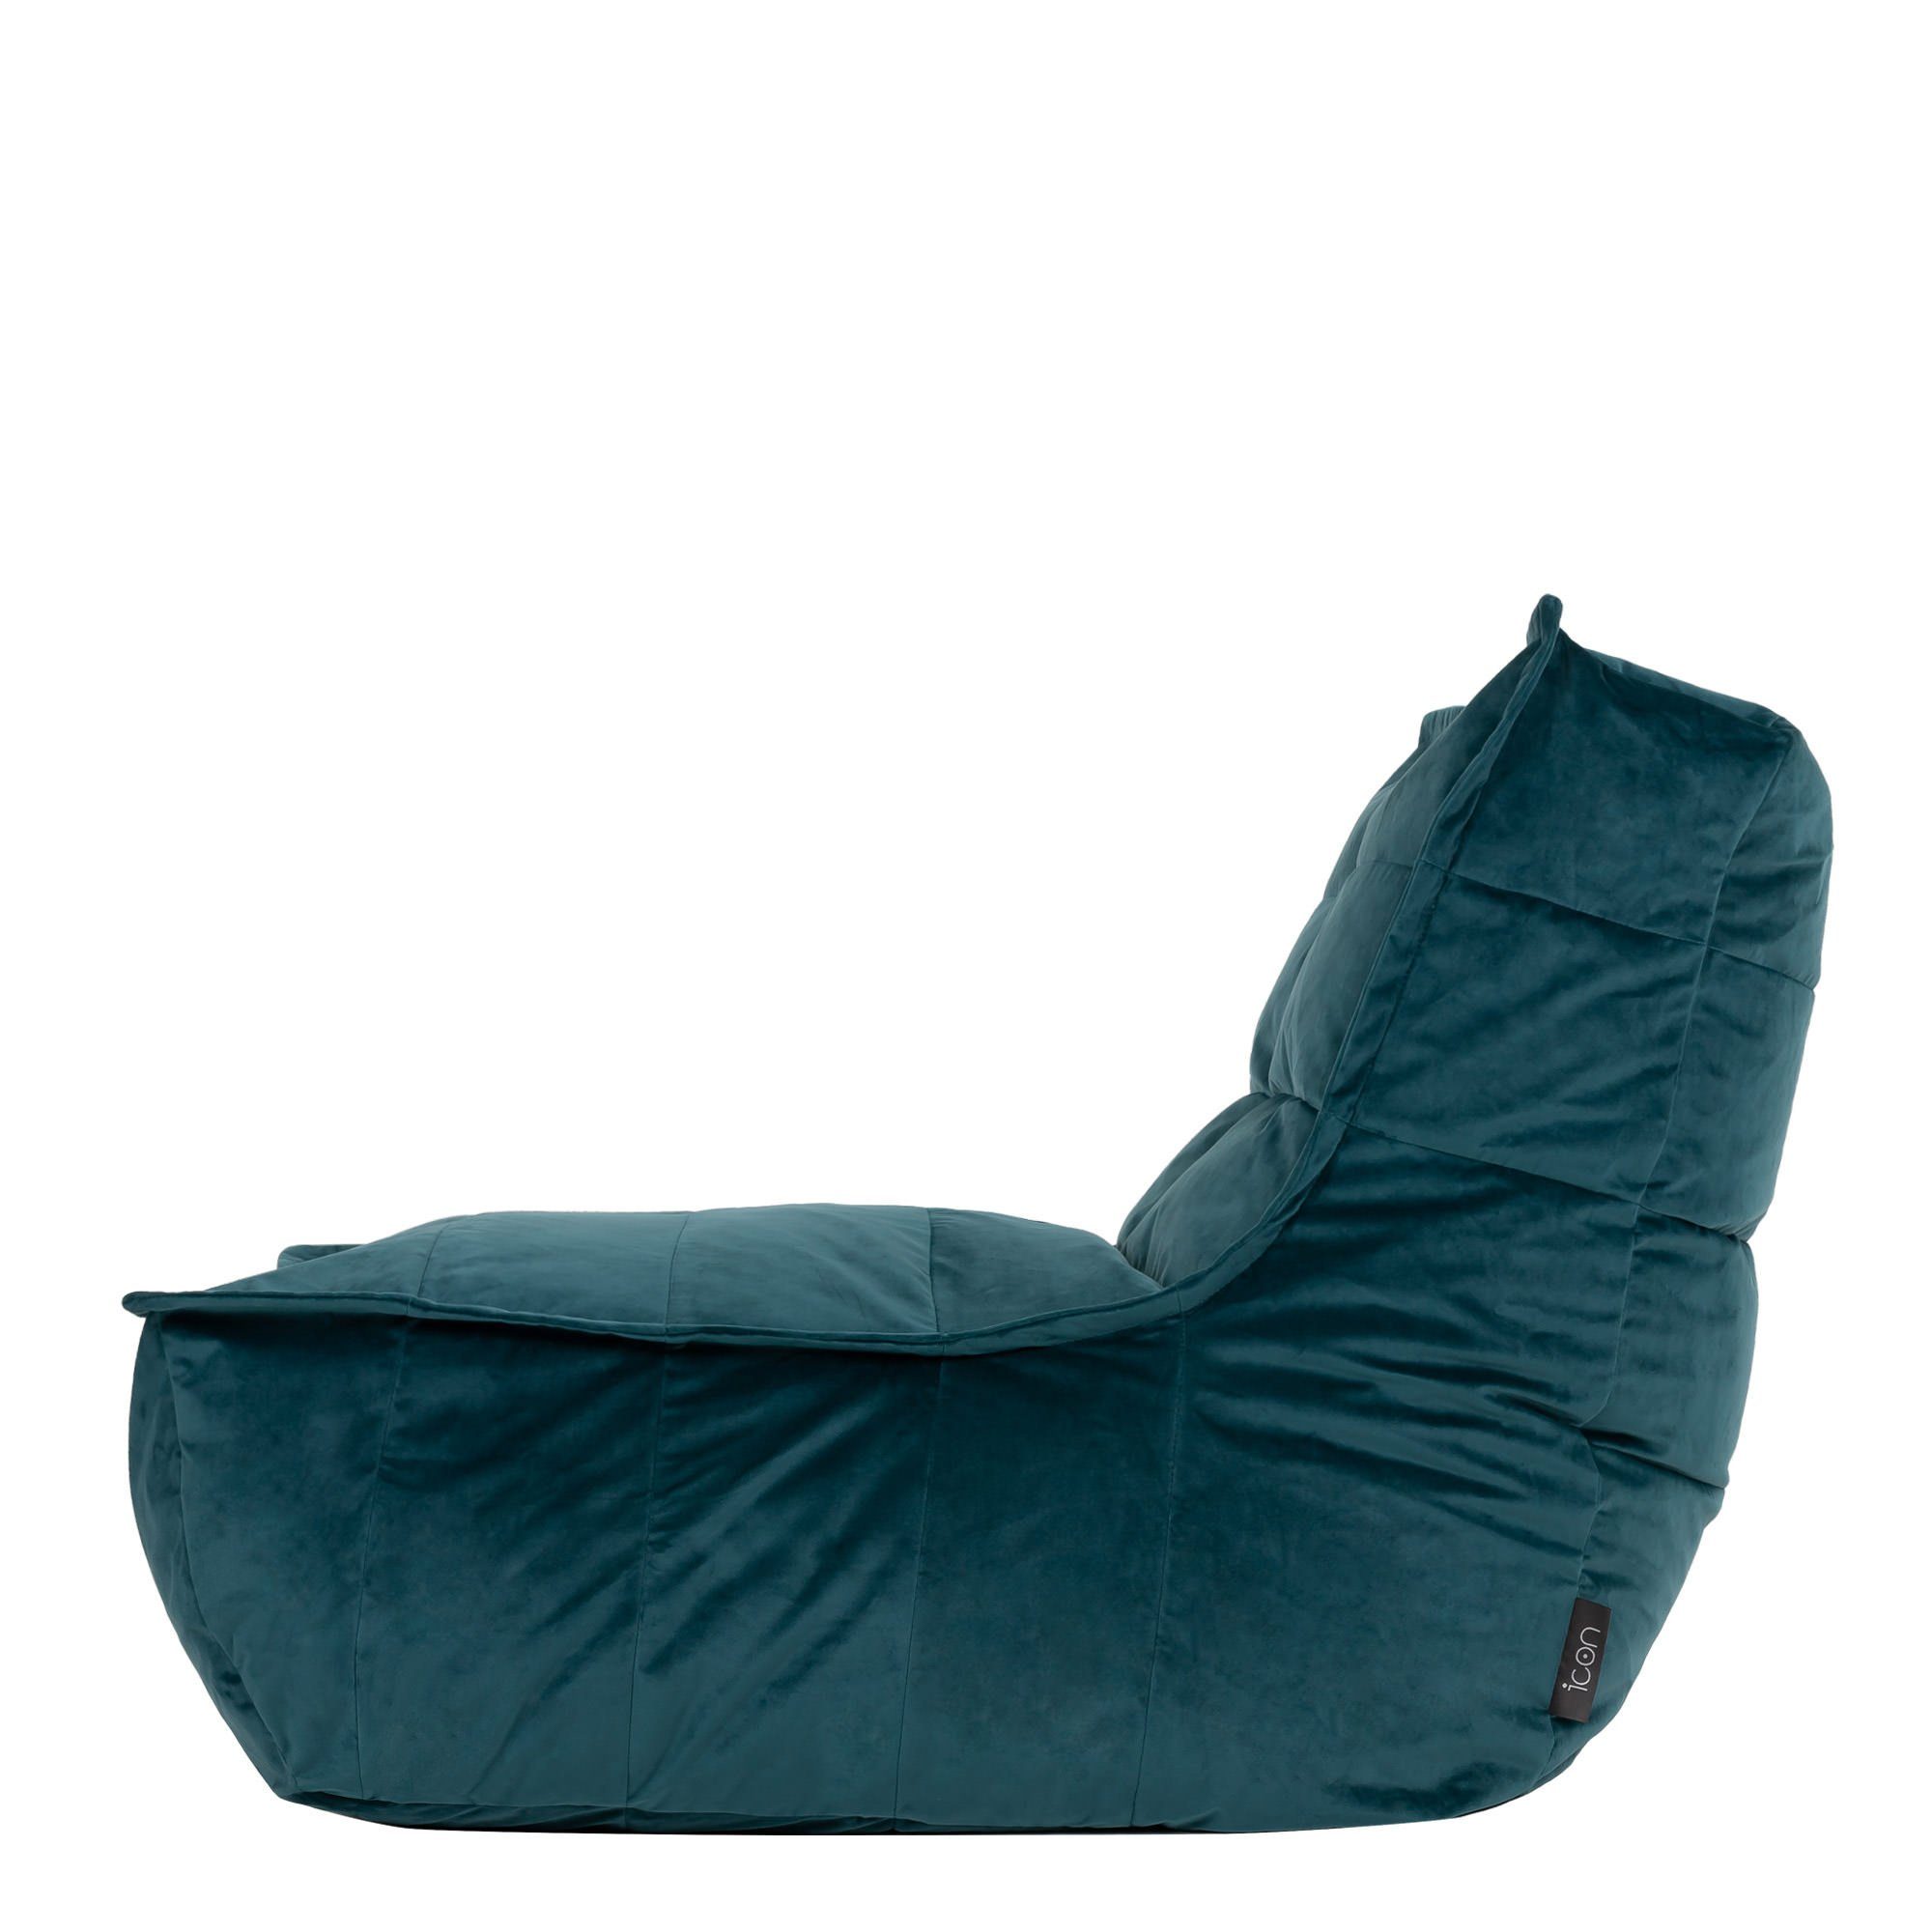 Sitzsack-Liege aus Sitzsack blaugrün Plüschsamt icon „Dolce“